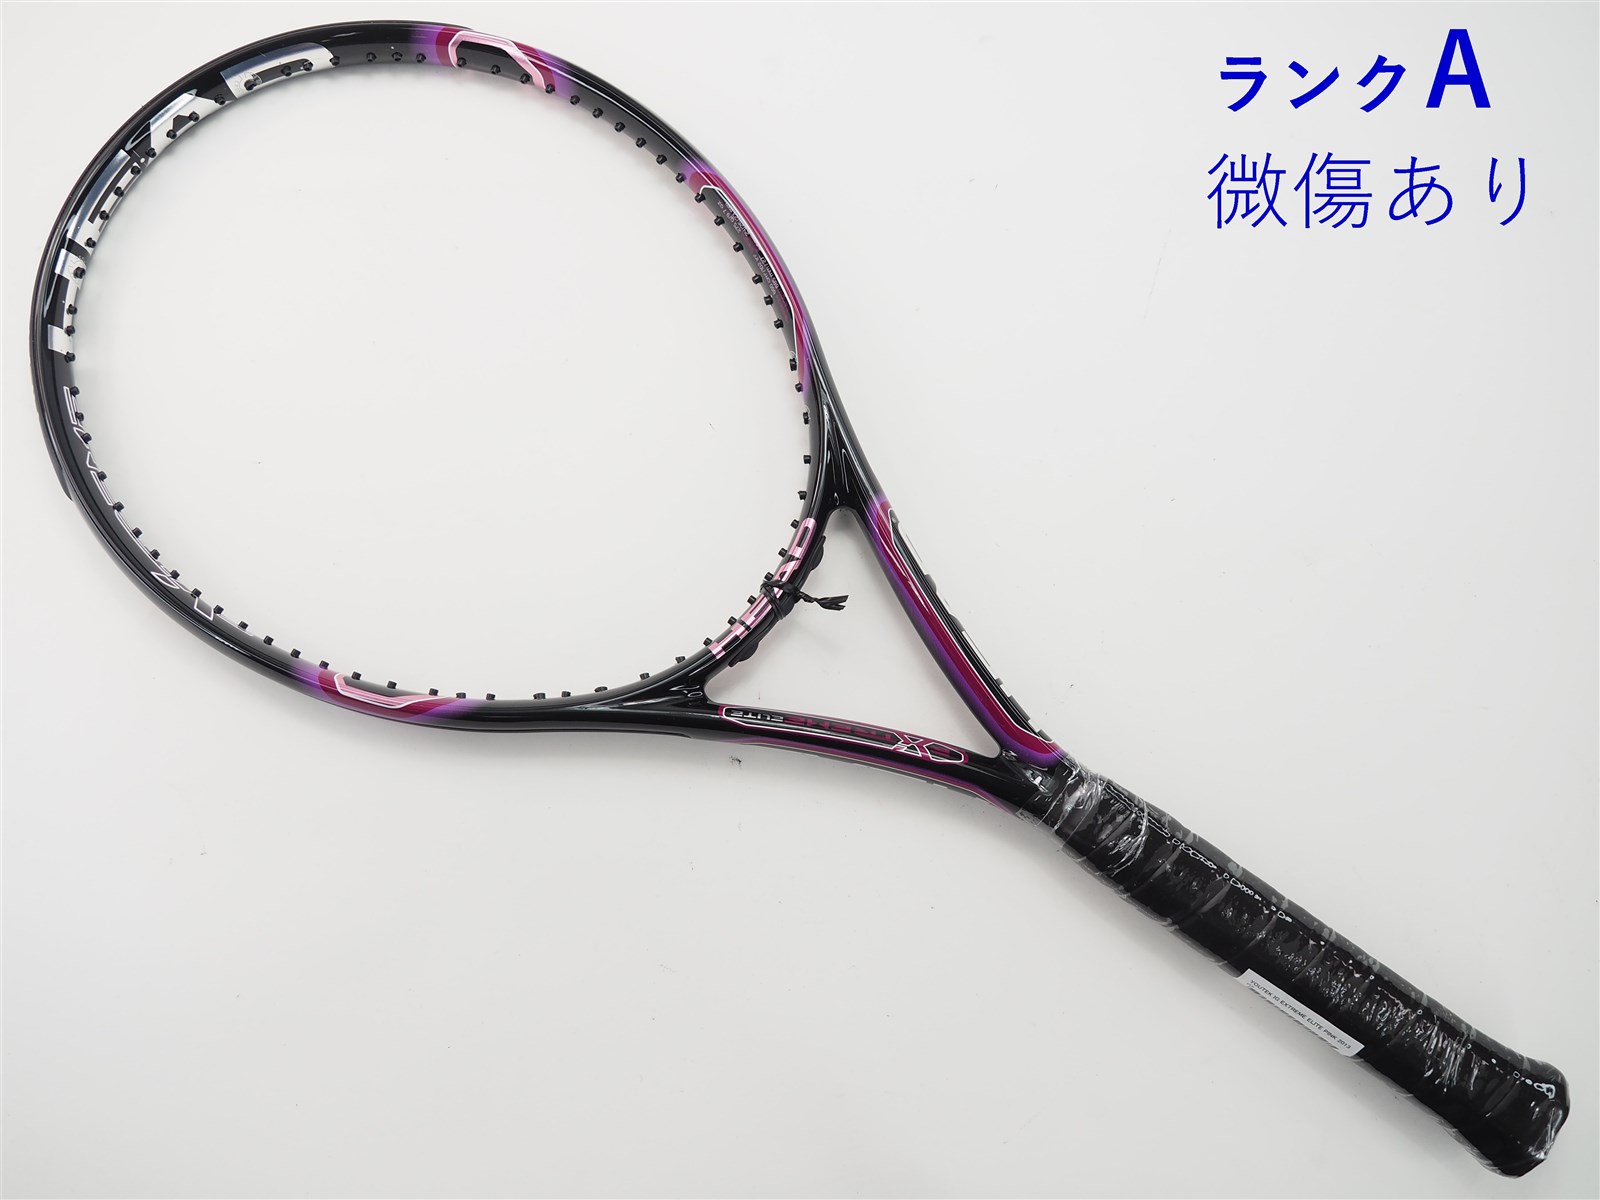 テニスラケット ヘッド ユーテック IG エクストリーム プロ 2.0 2012年モデル (G2)HEAD YOUTEK IG EXTREME PRO 2.0 2012